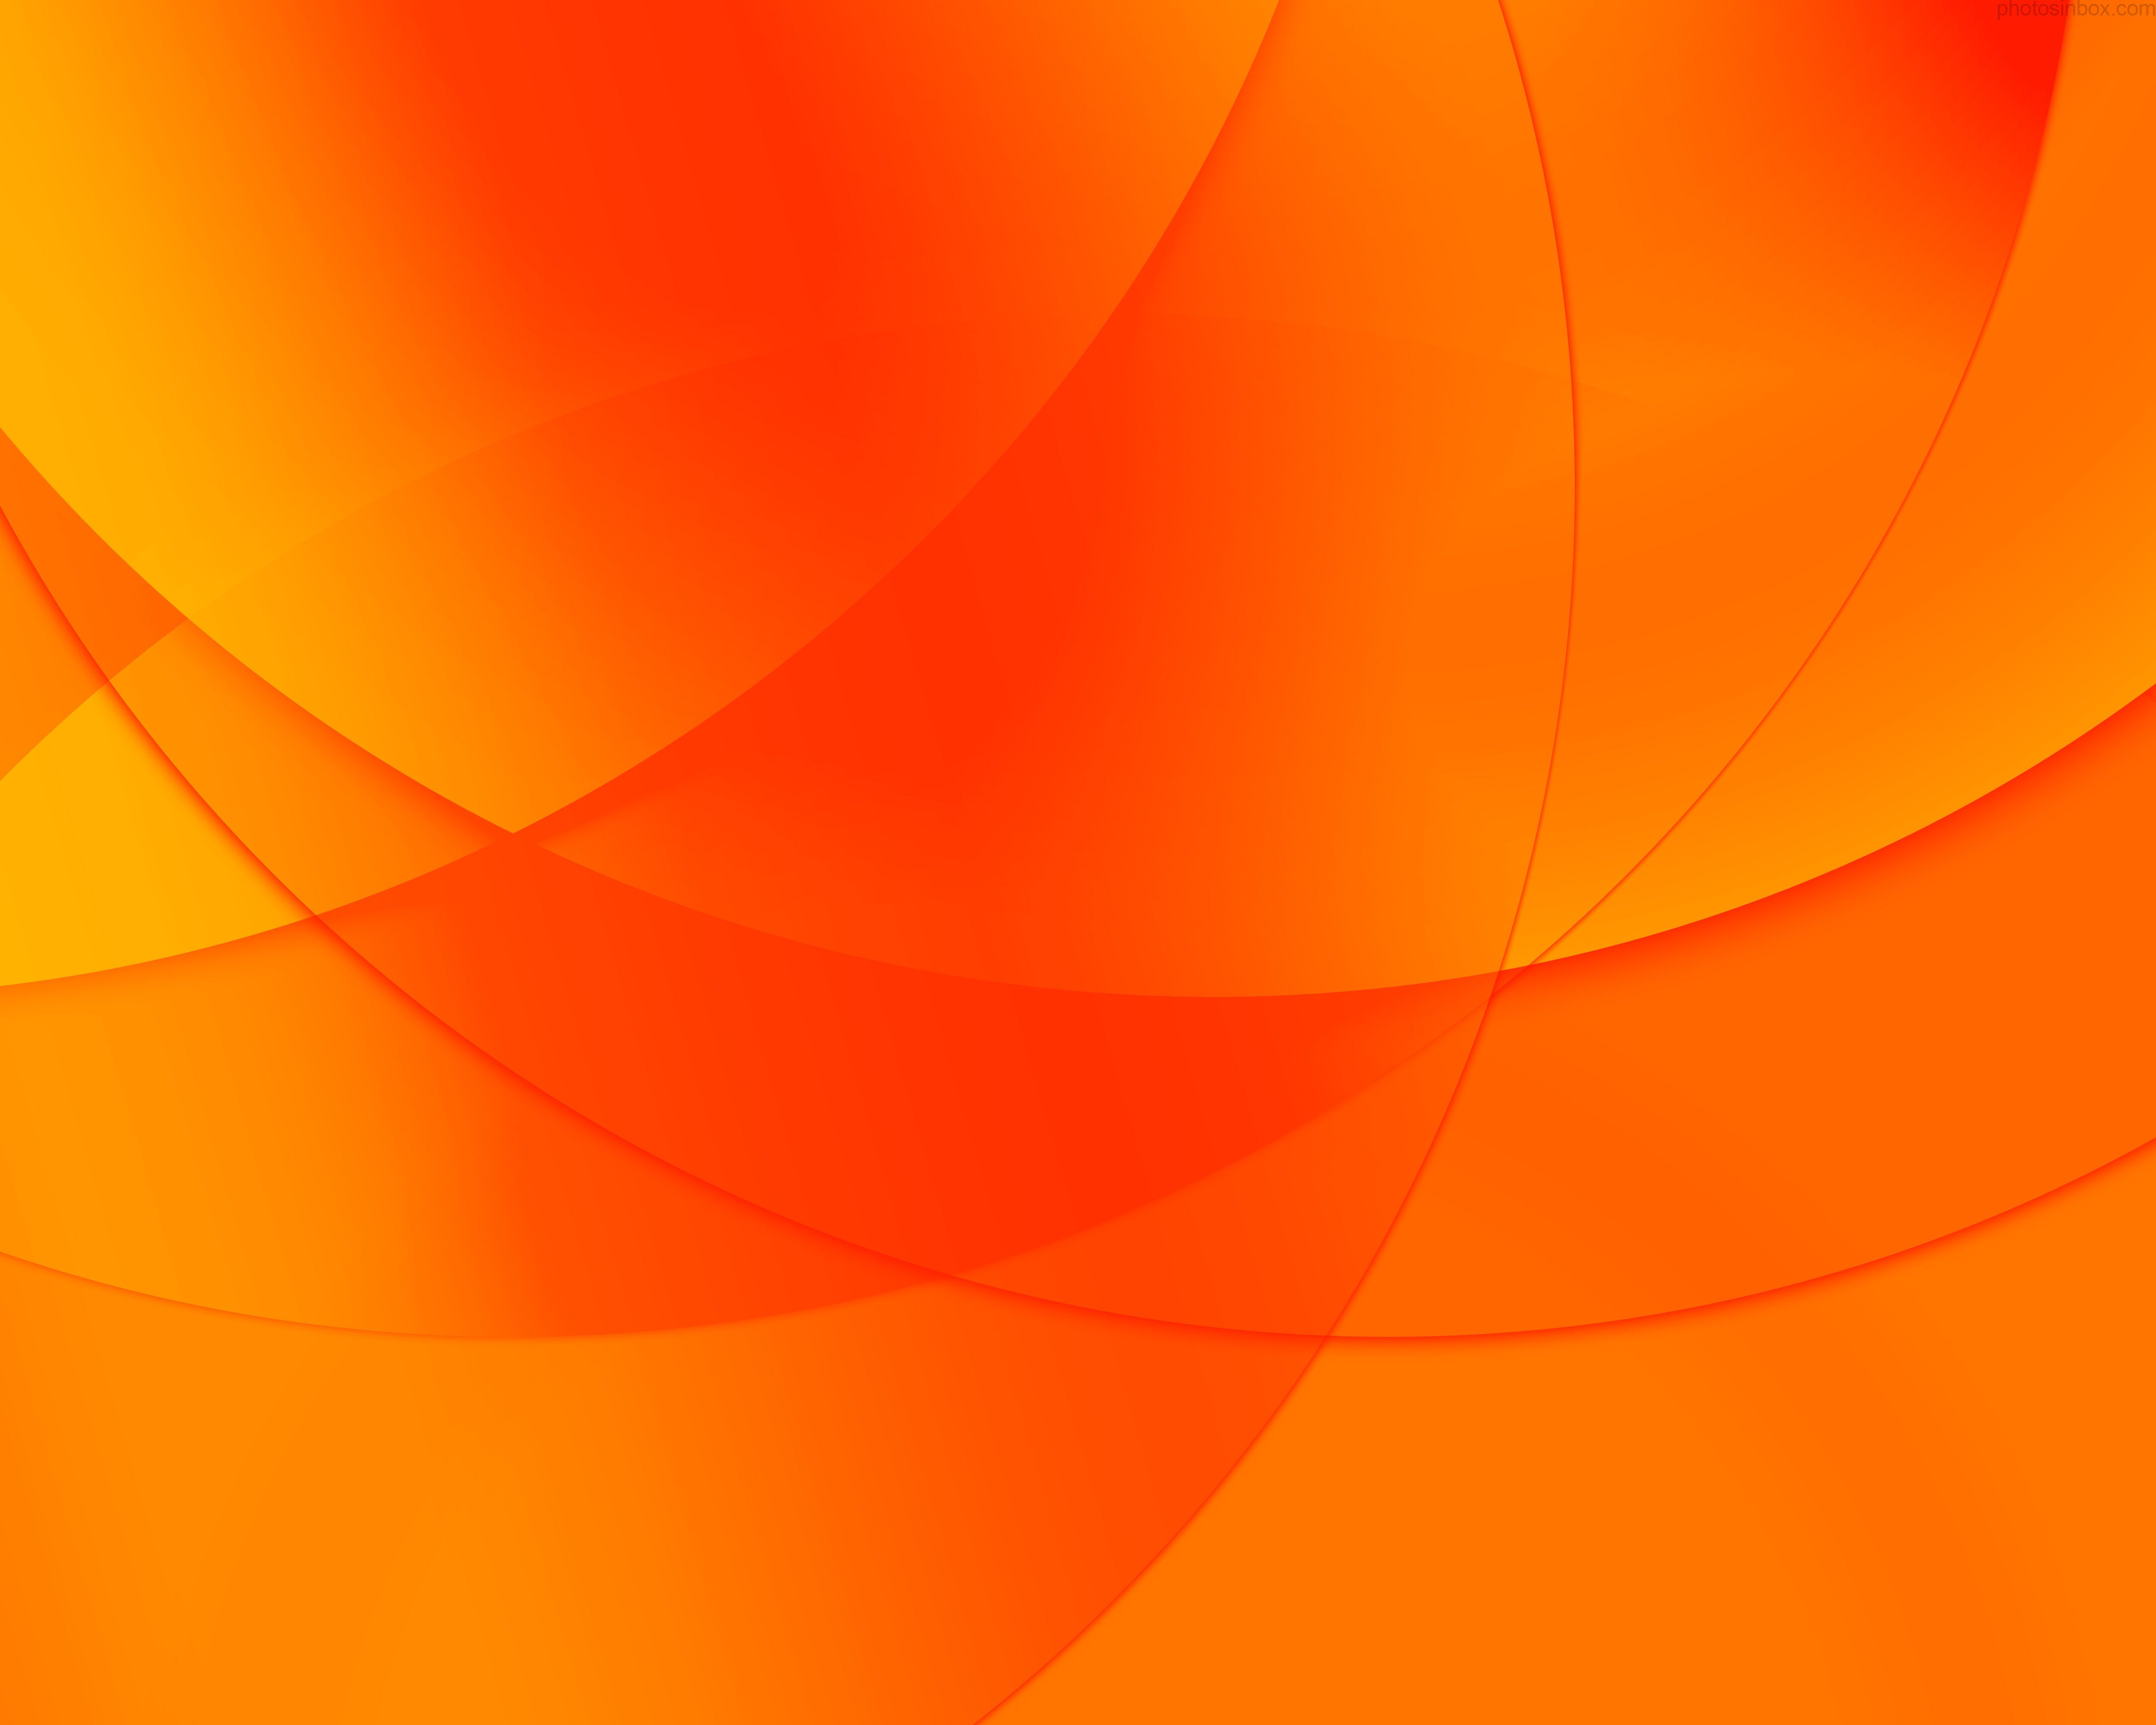 Background orange